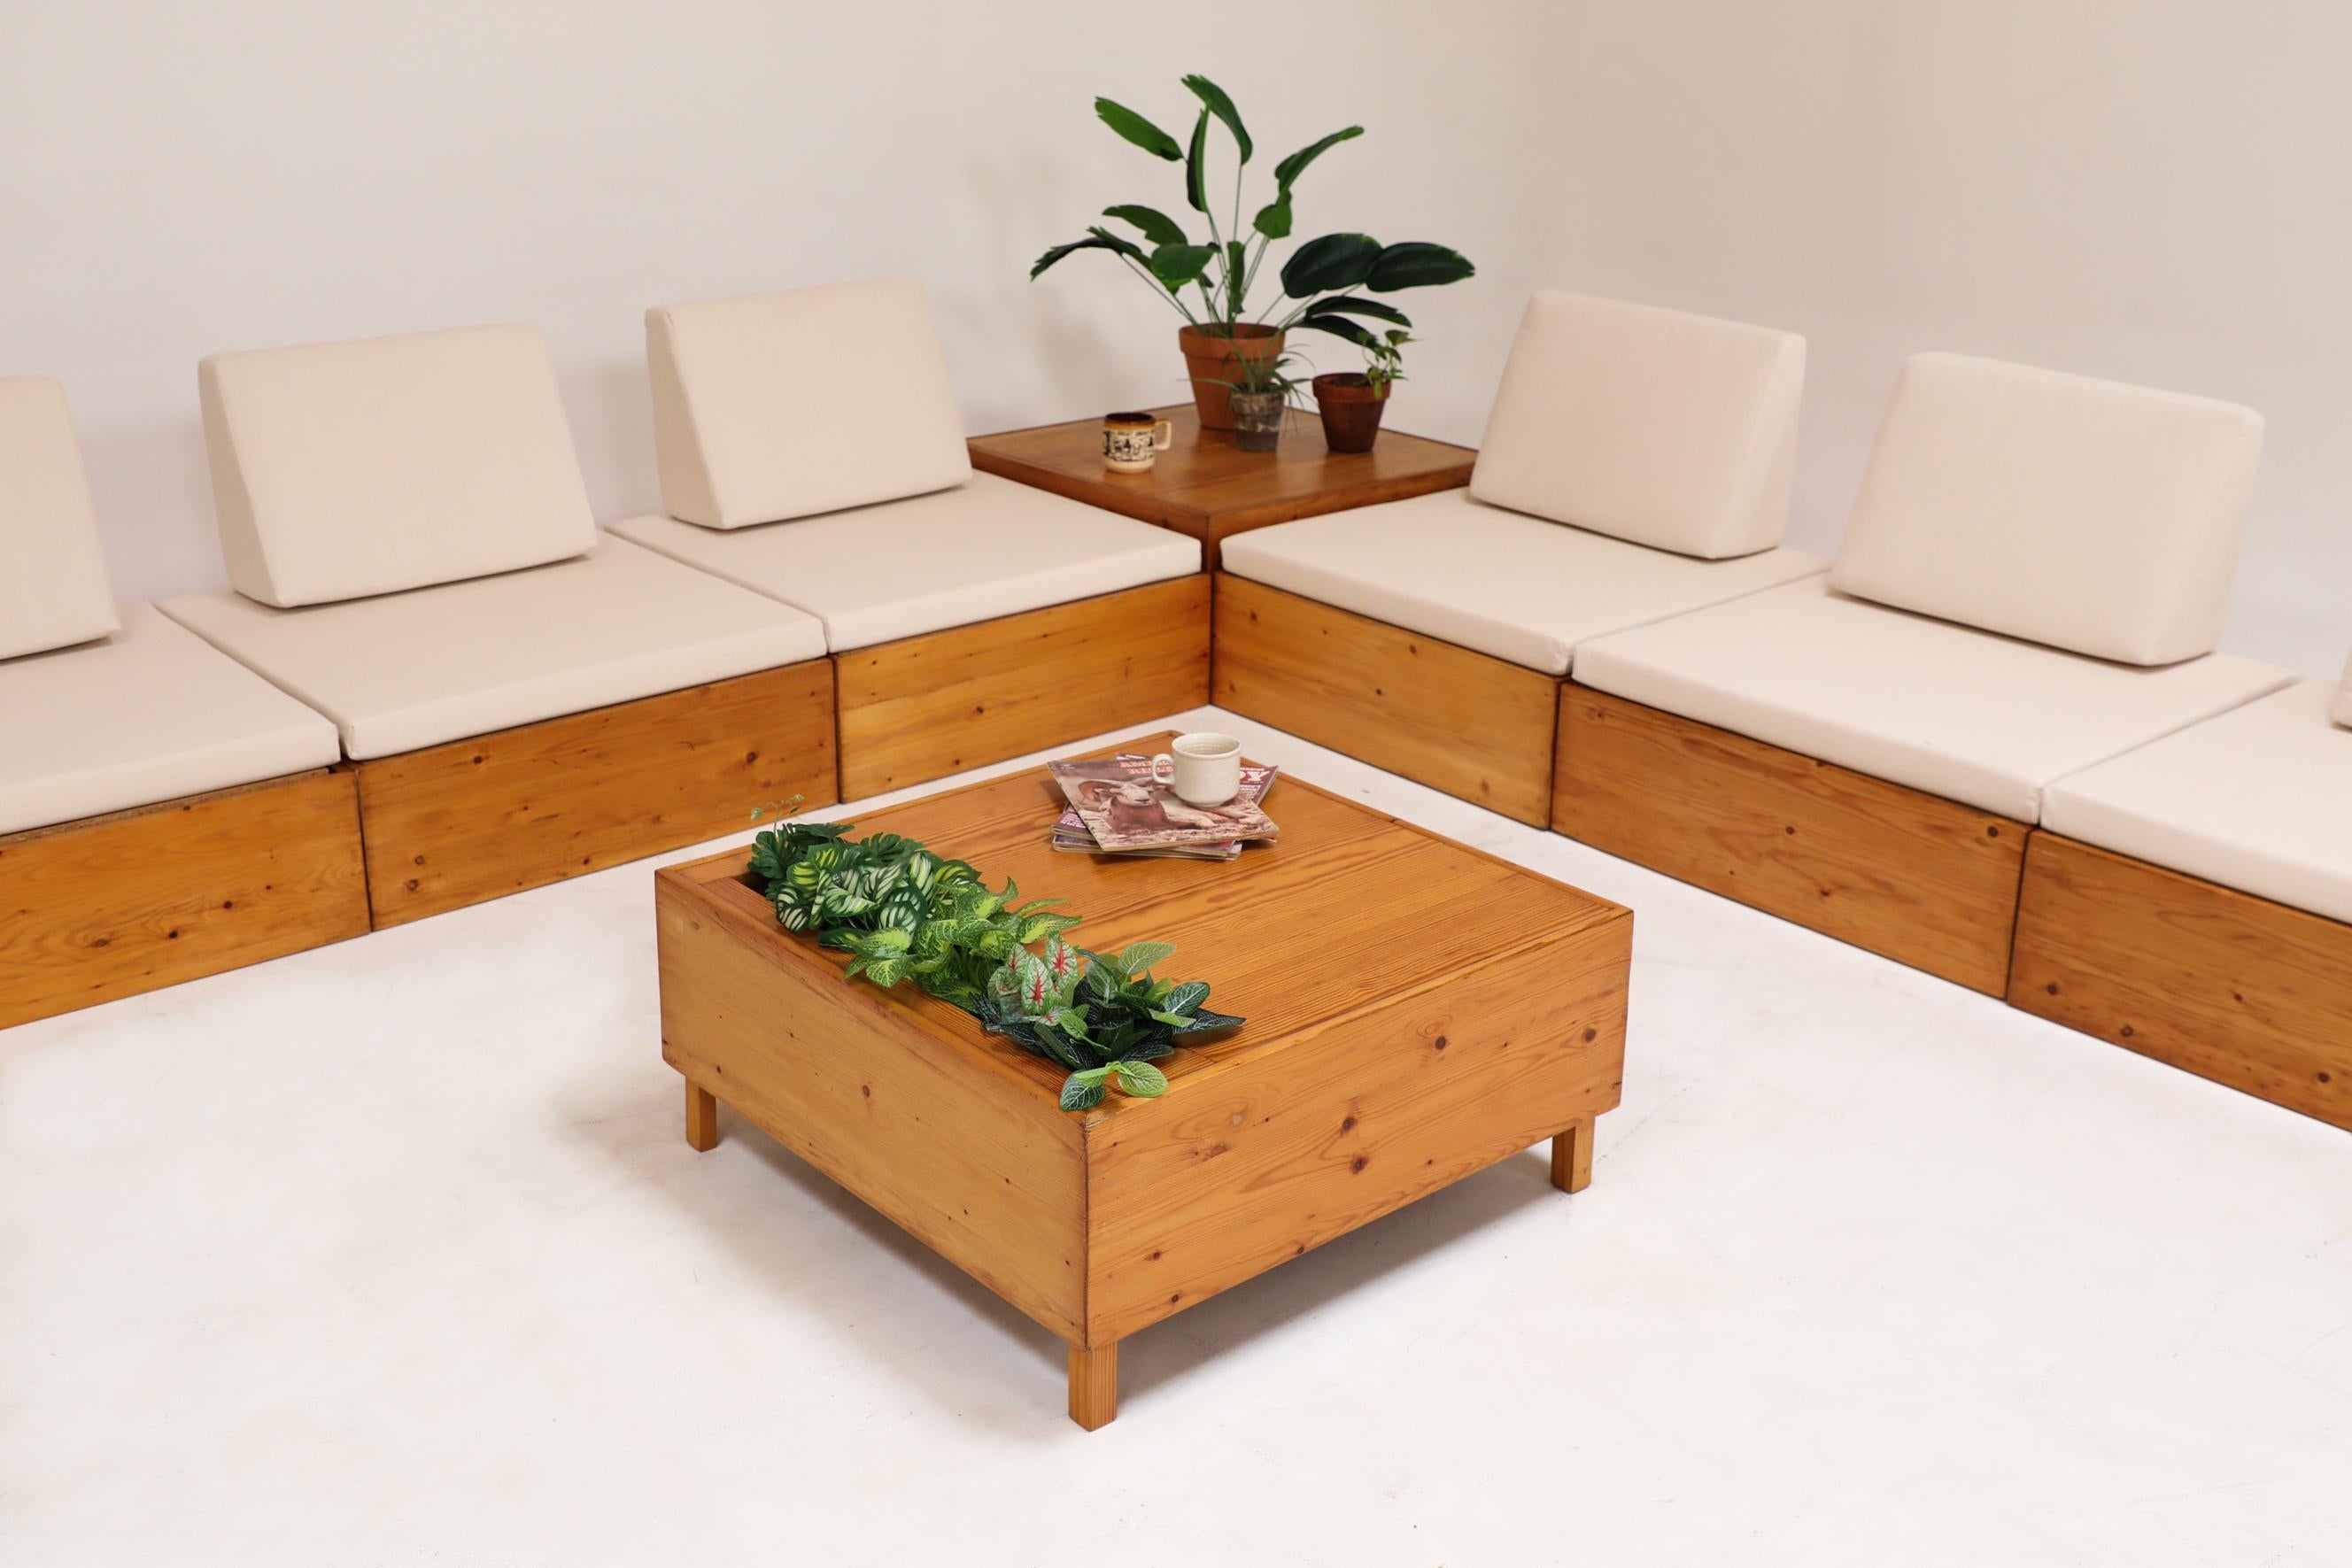 Canapé sectionnel en pin inspiré par Ate van Apeldoorn avec nouveaux sièges en toile et tables d'appoint intégrées. L'une d'entre elles est découpée pour accueillir des magazines ou des plantes. Légèrement rénové avec des coussins neufs, autrement